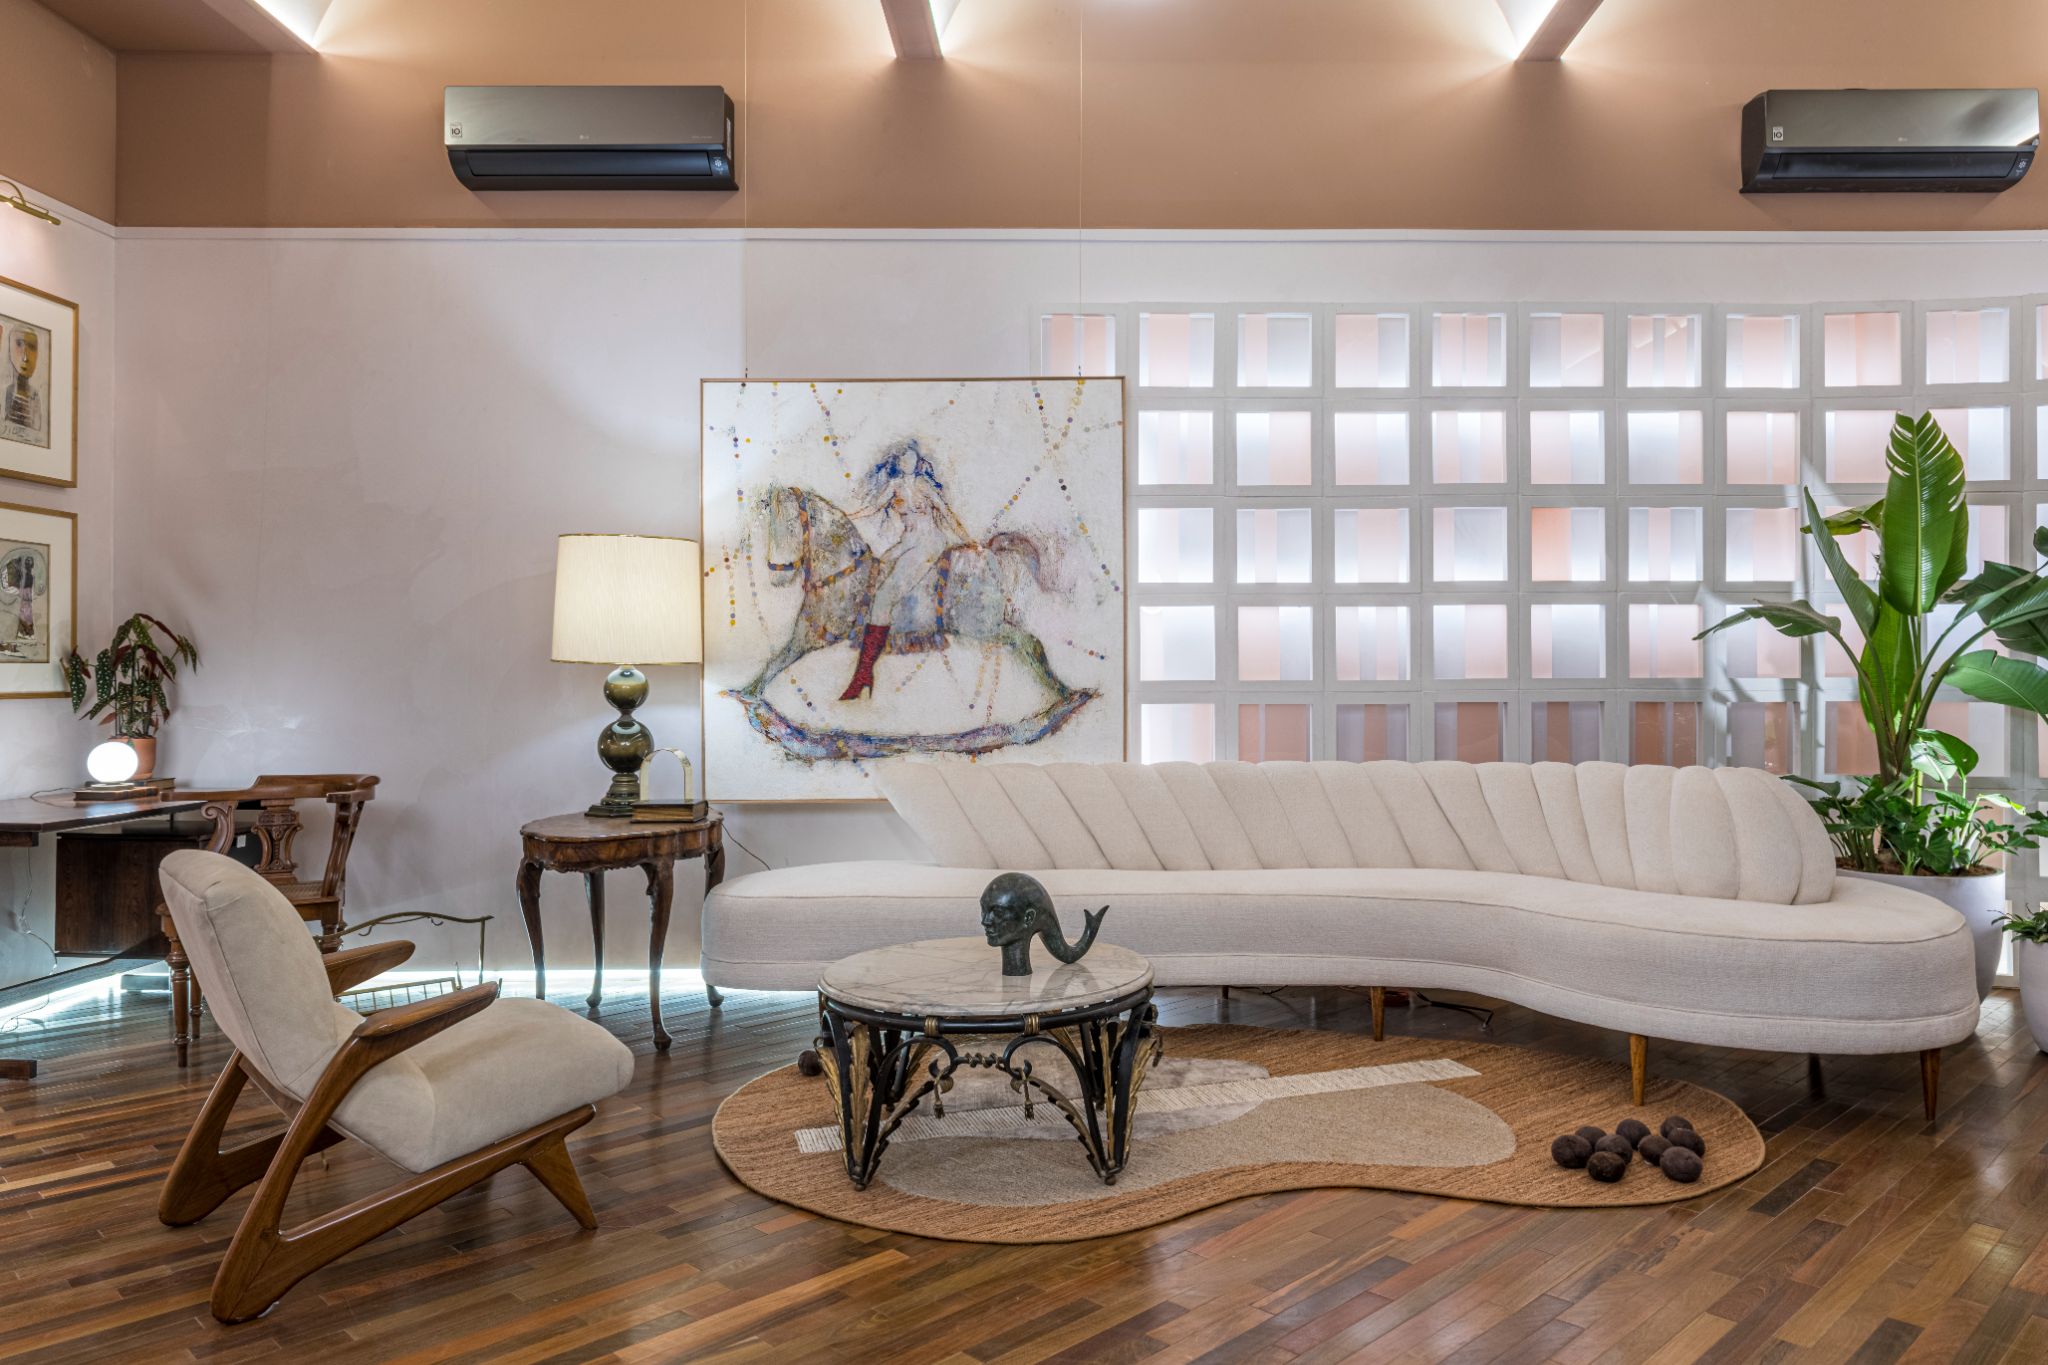 Sala com piso de madeira, sofá e paredes brancas com cobogó branco e vasos de plantas.